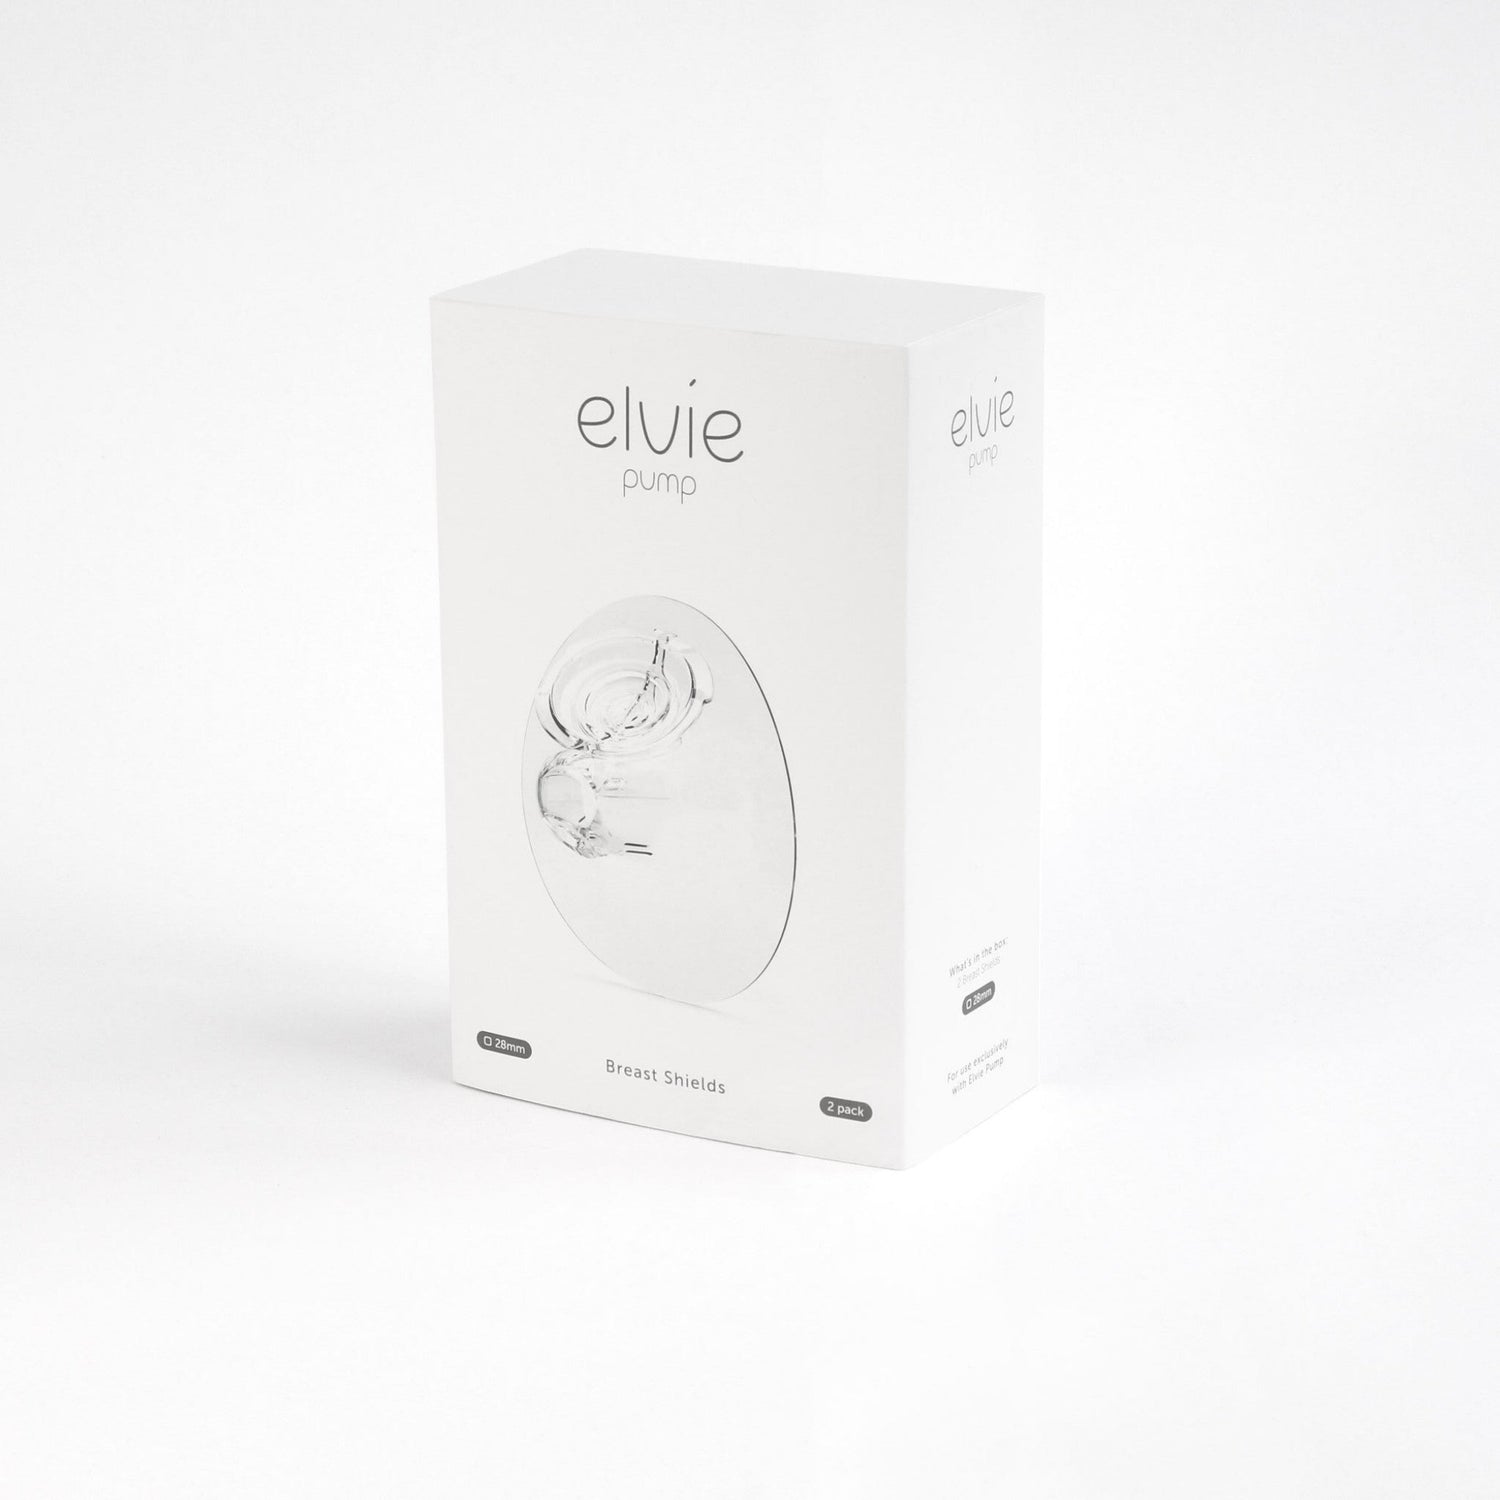 Elvie Pump Breast Shield 28mm (2 pack)